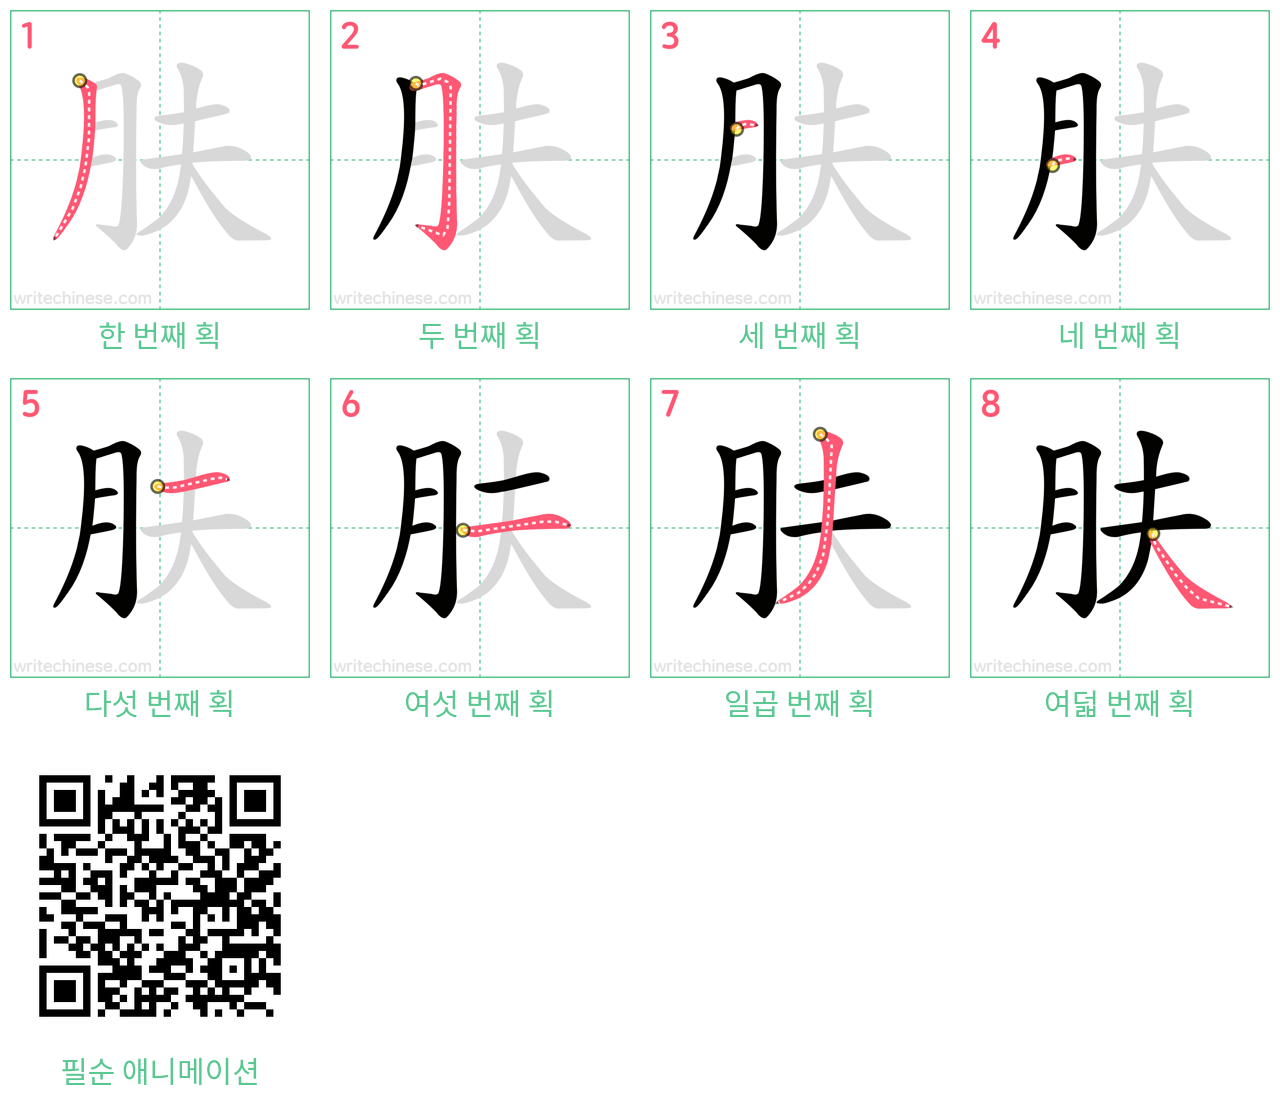 肤 step-by-step stroke order diagrams